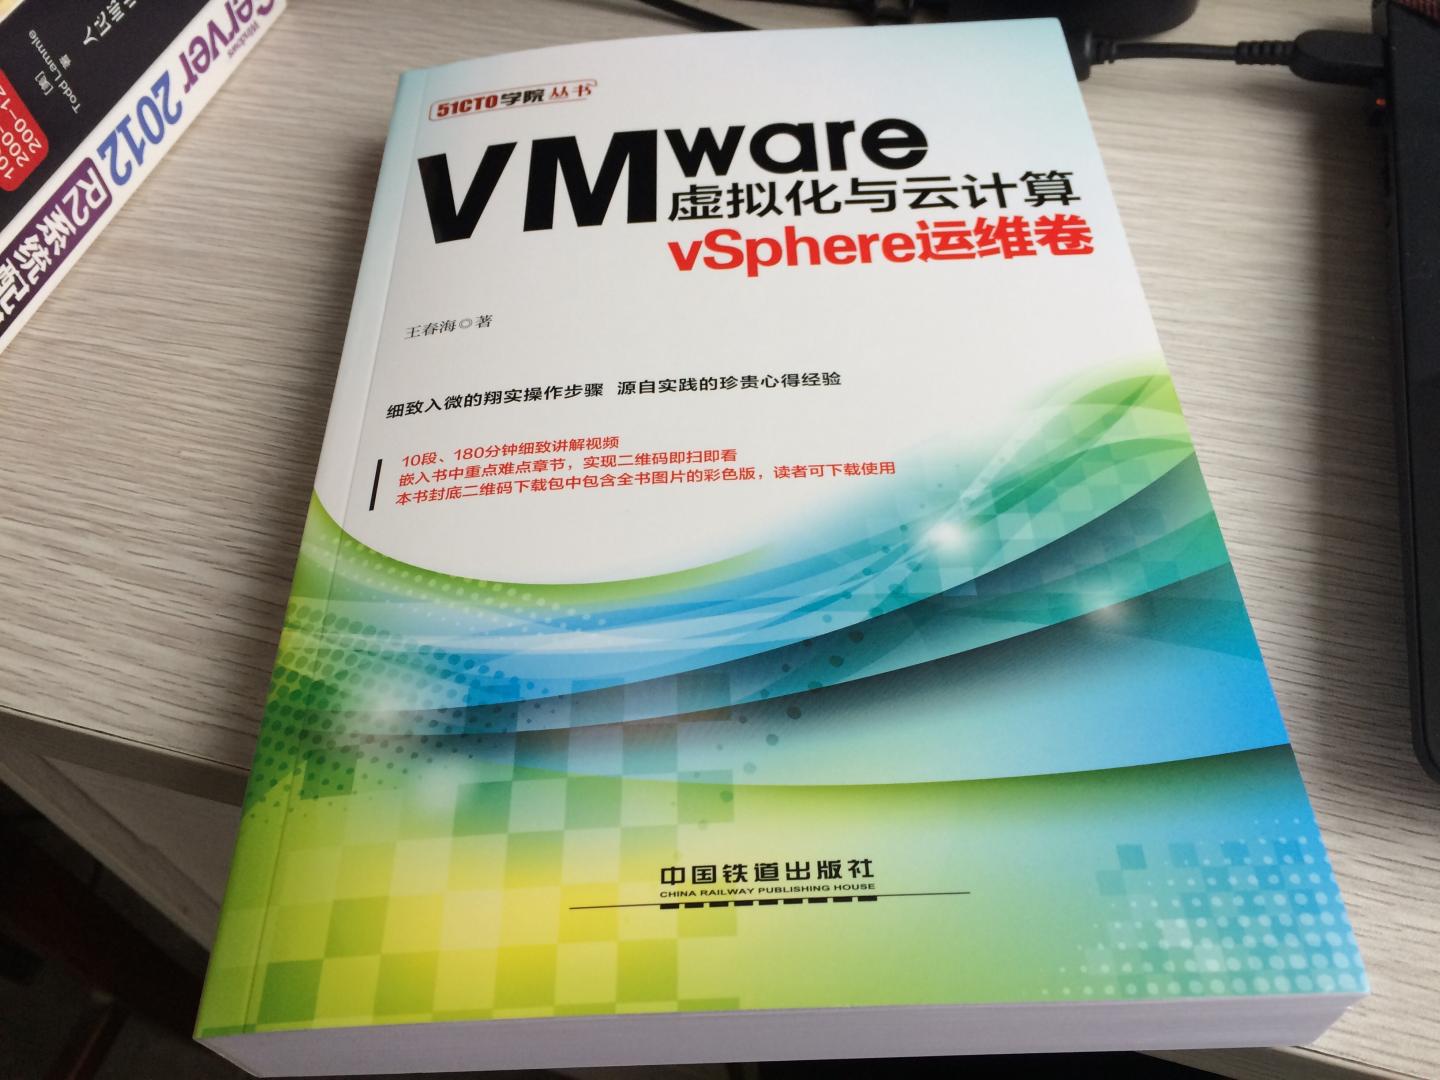 王春海最新力作，不过版本是VMware v6.0（其实应该用v6.5来写作），内容还是一如既往的精华，浅显易懂，尤其适合学习VMware vShpere基础知识的朋友们阅读使用。